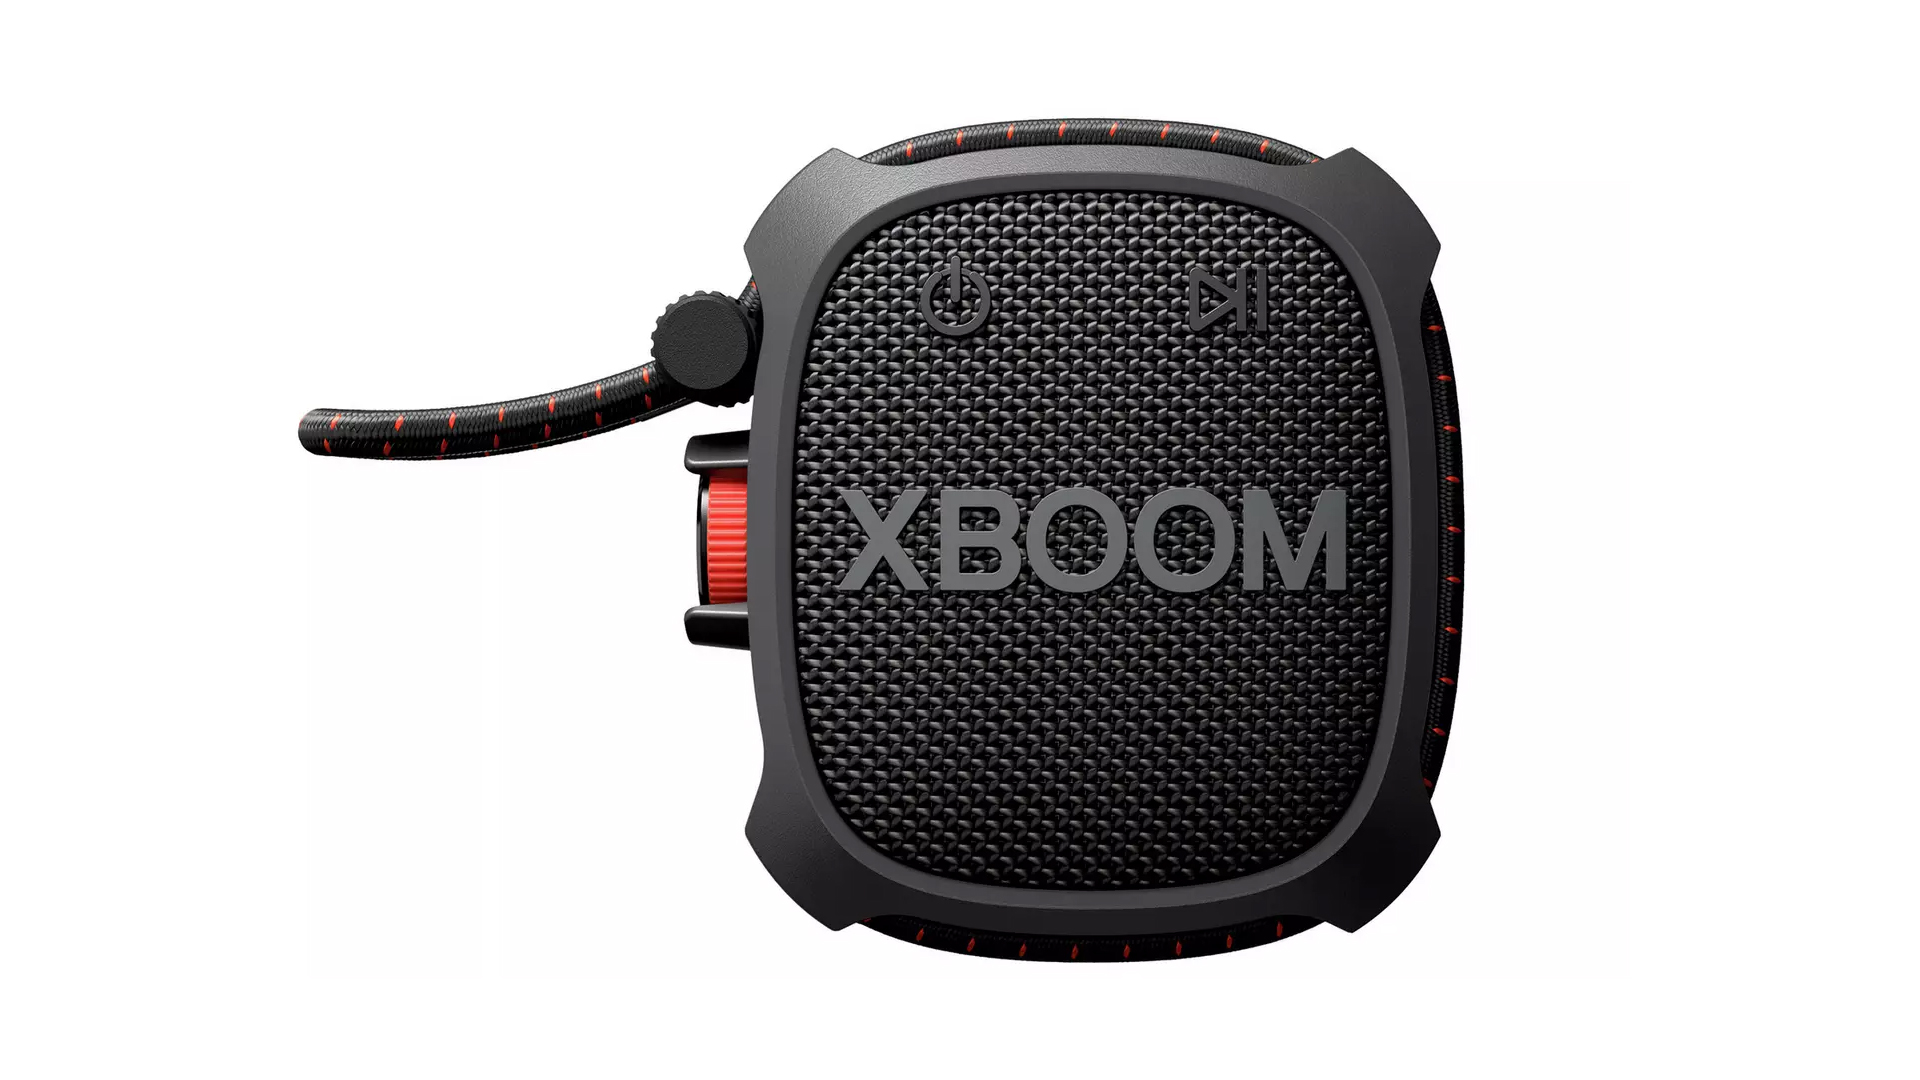 LG XBoom XG2 tough speaker